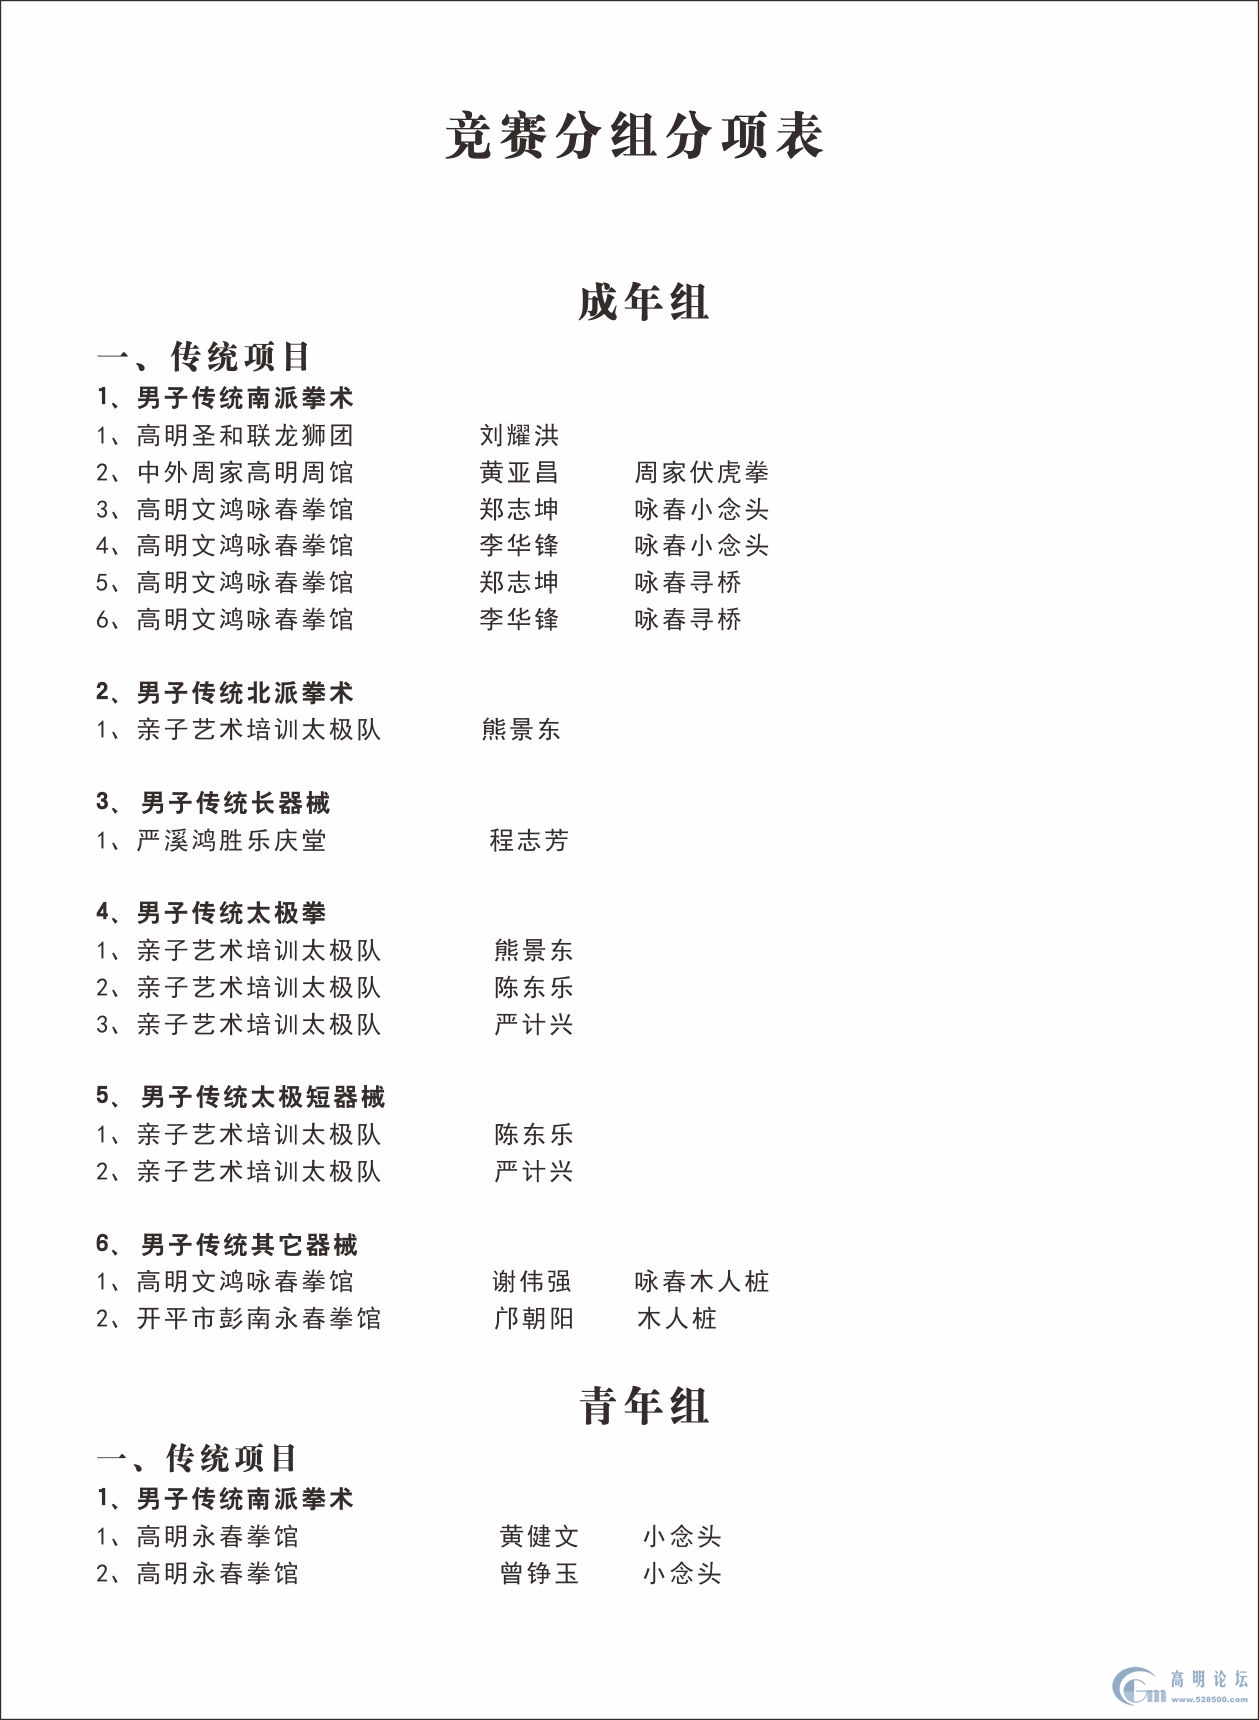 2015高明首届武术锦标赛日程安排表 - 高明武